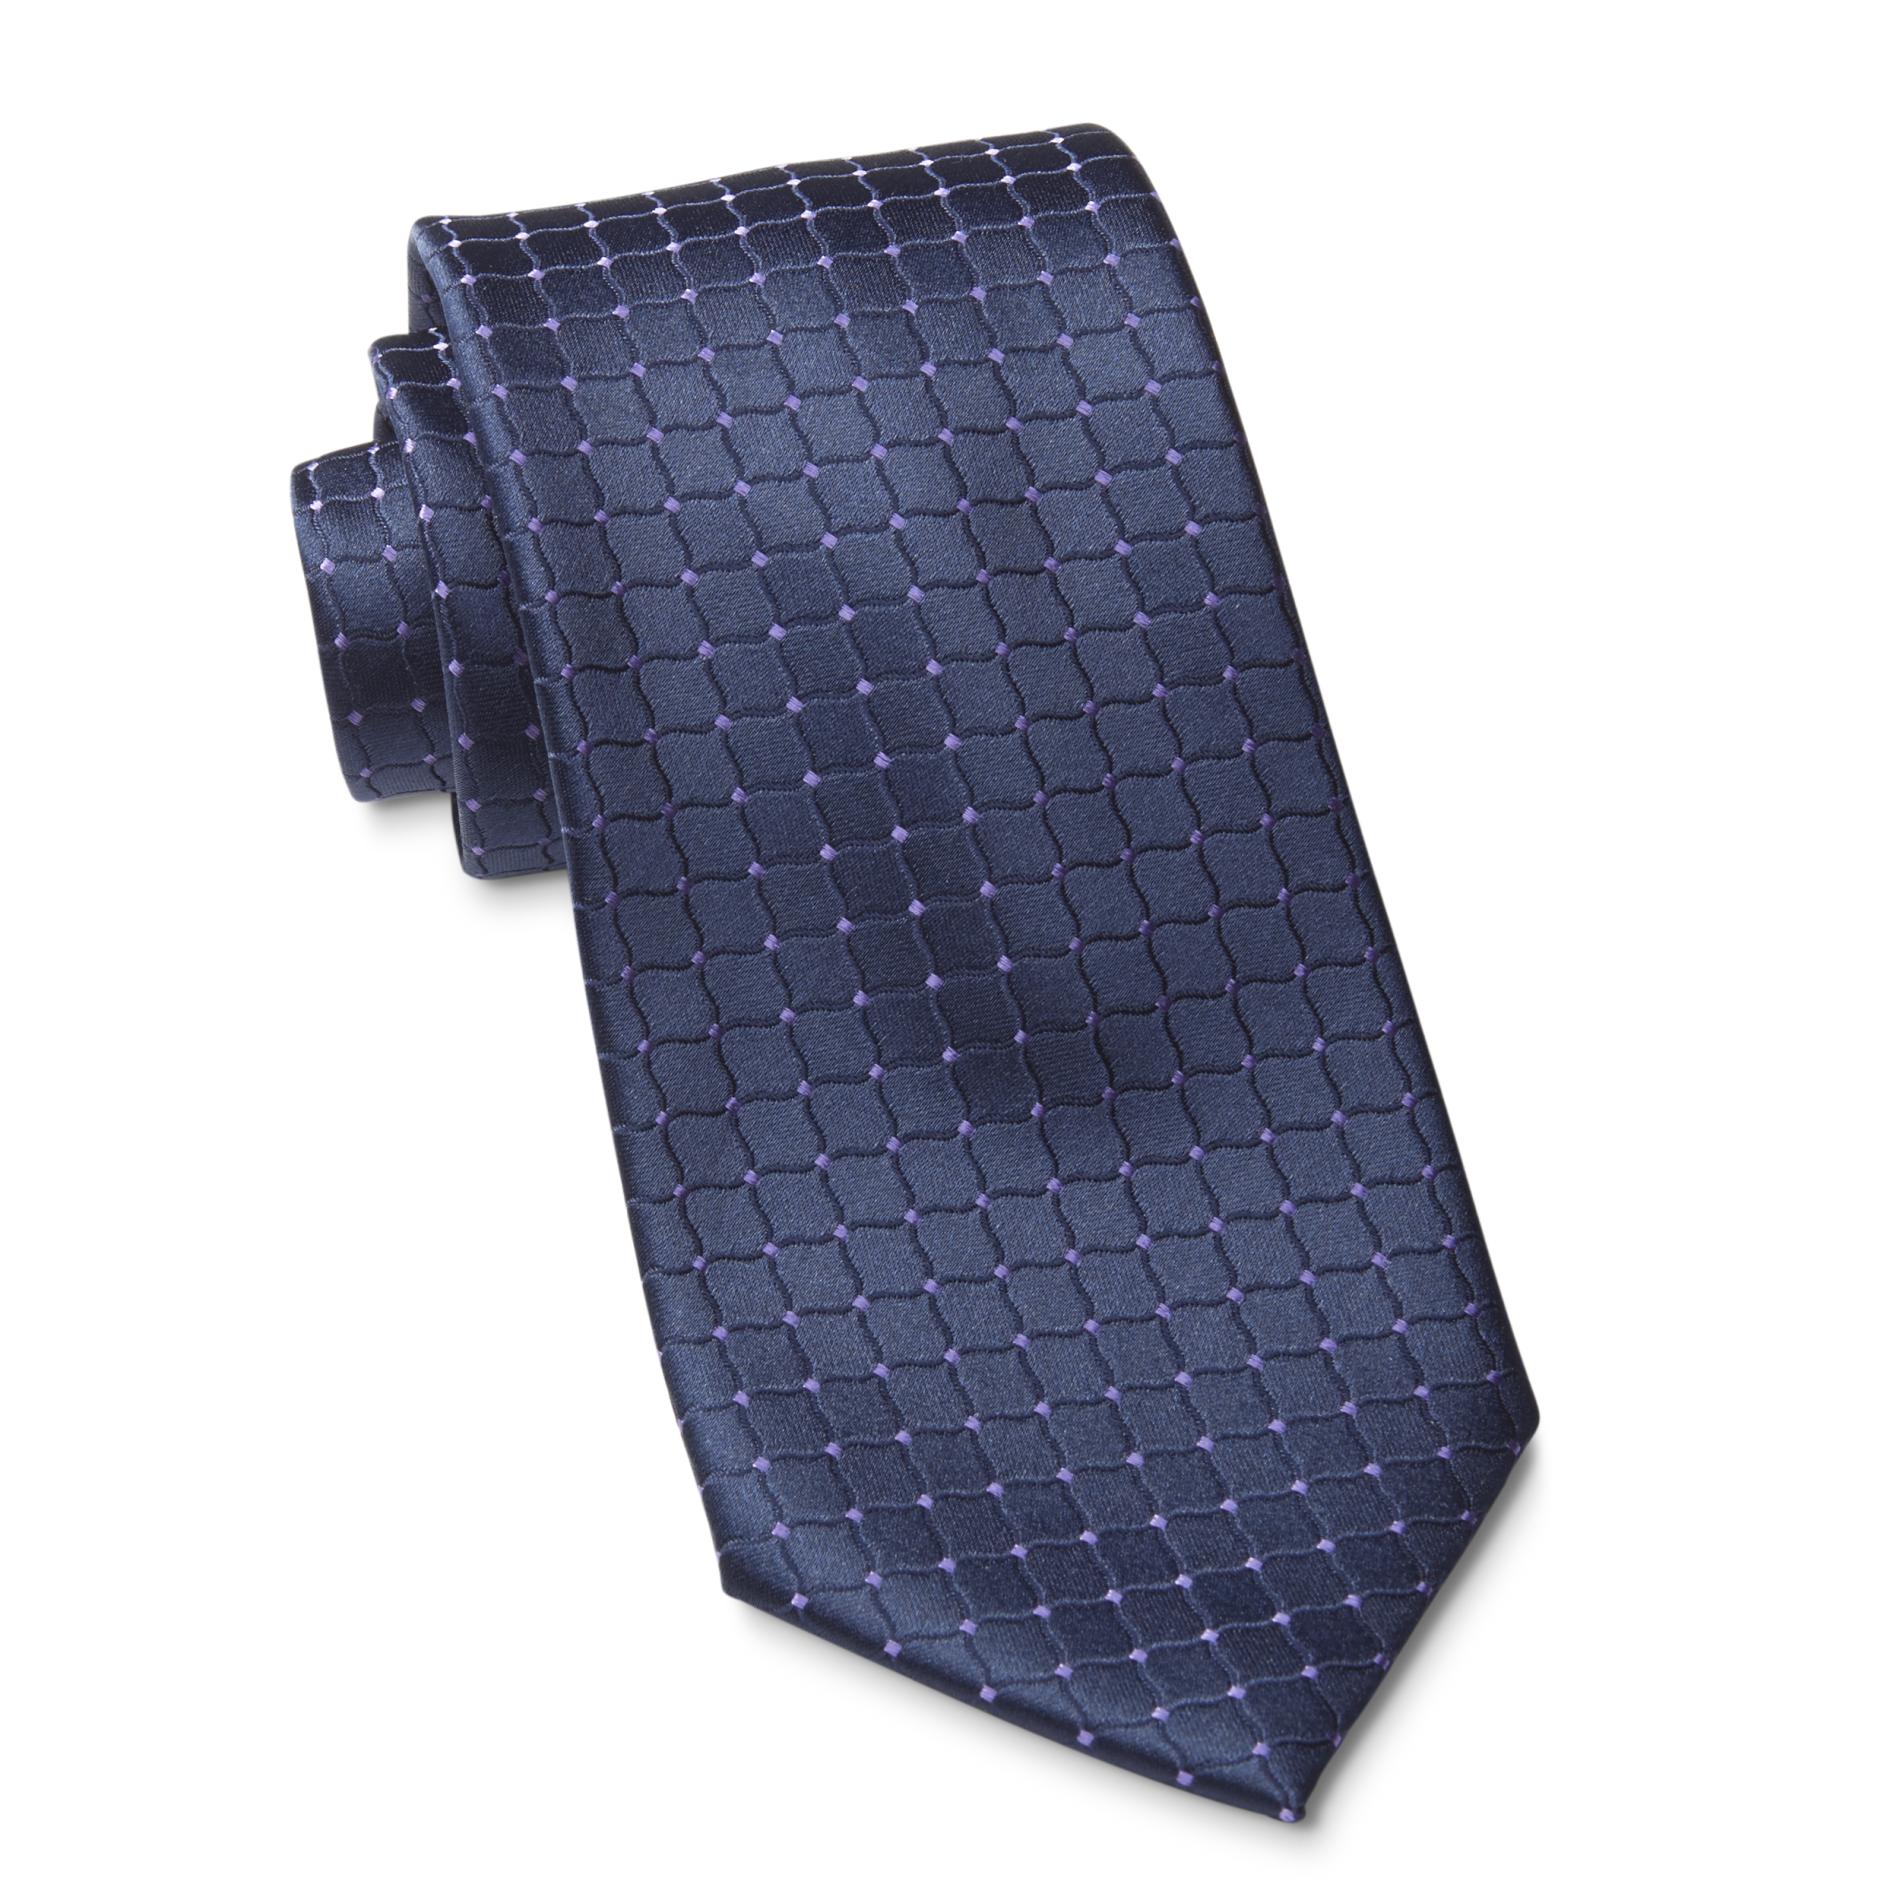 Covington Men's Necktie - Grid